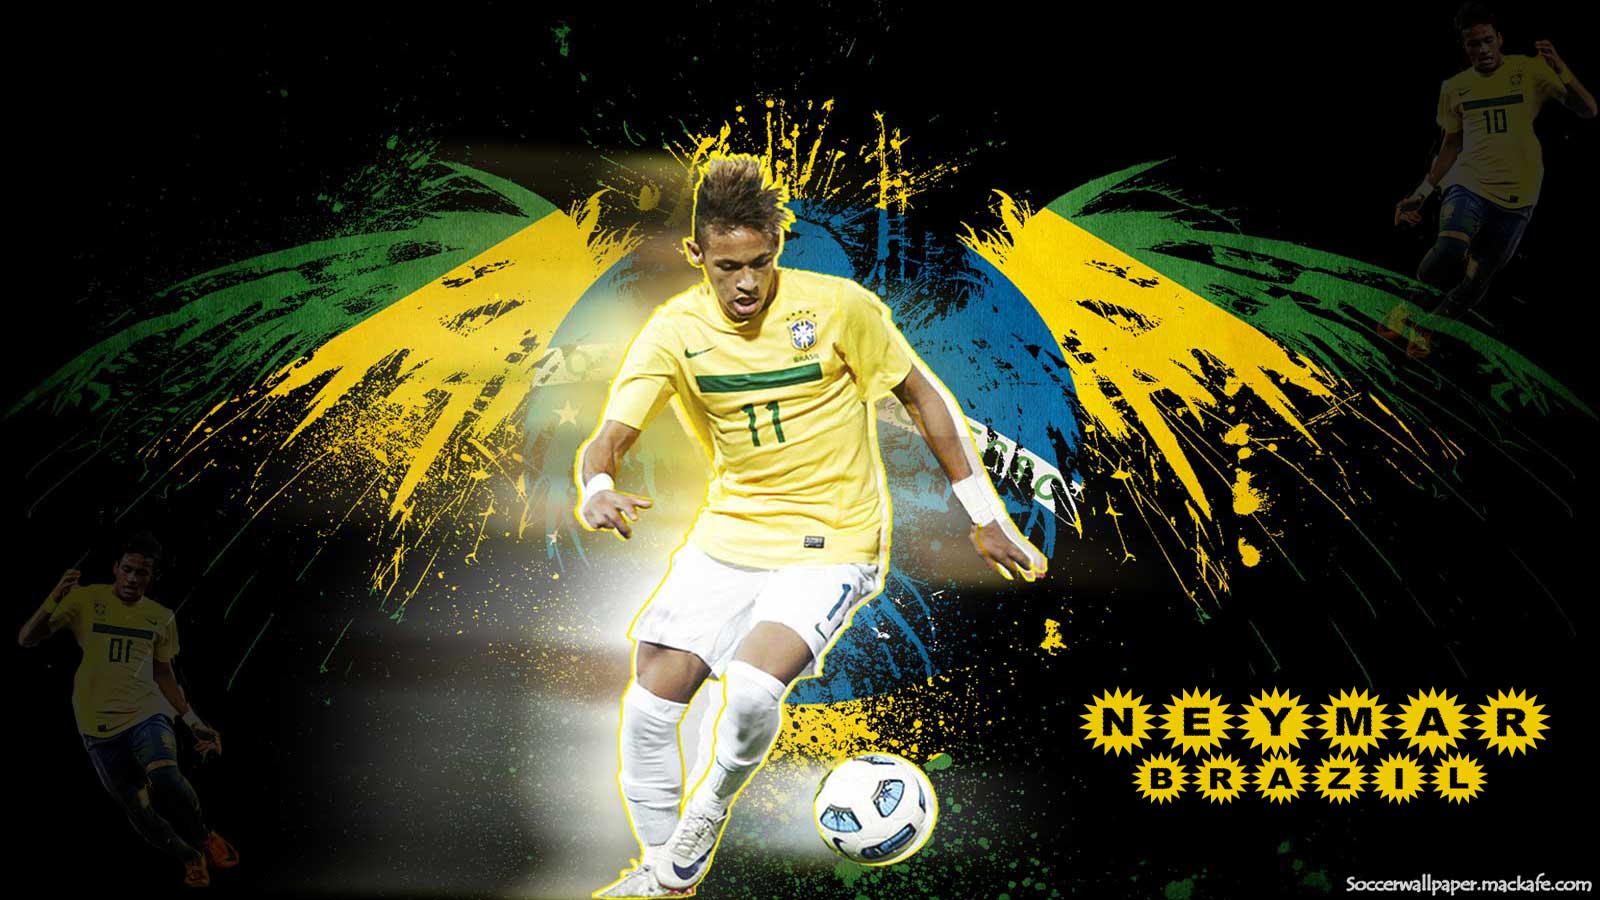 Neymar Wallpaper Background Imagebank Biz